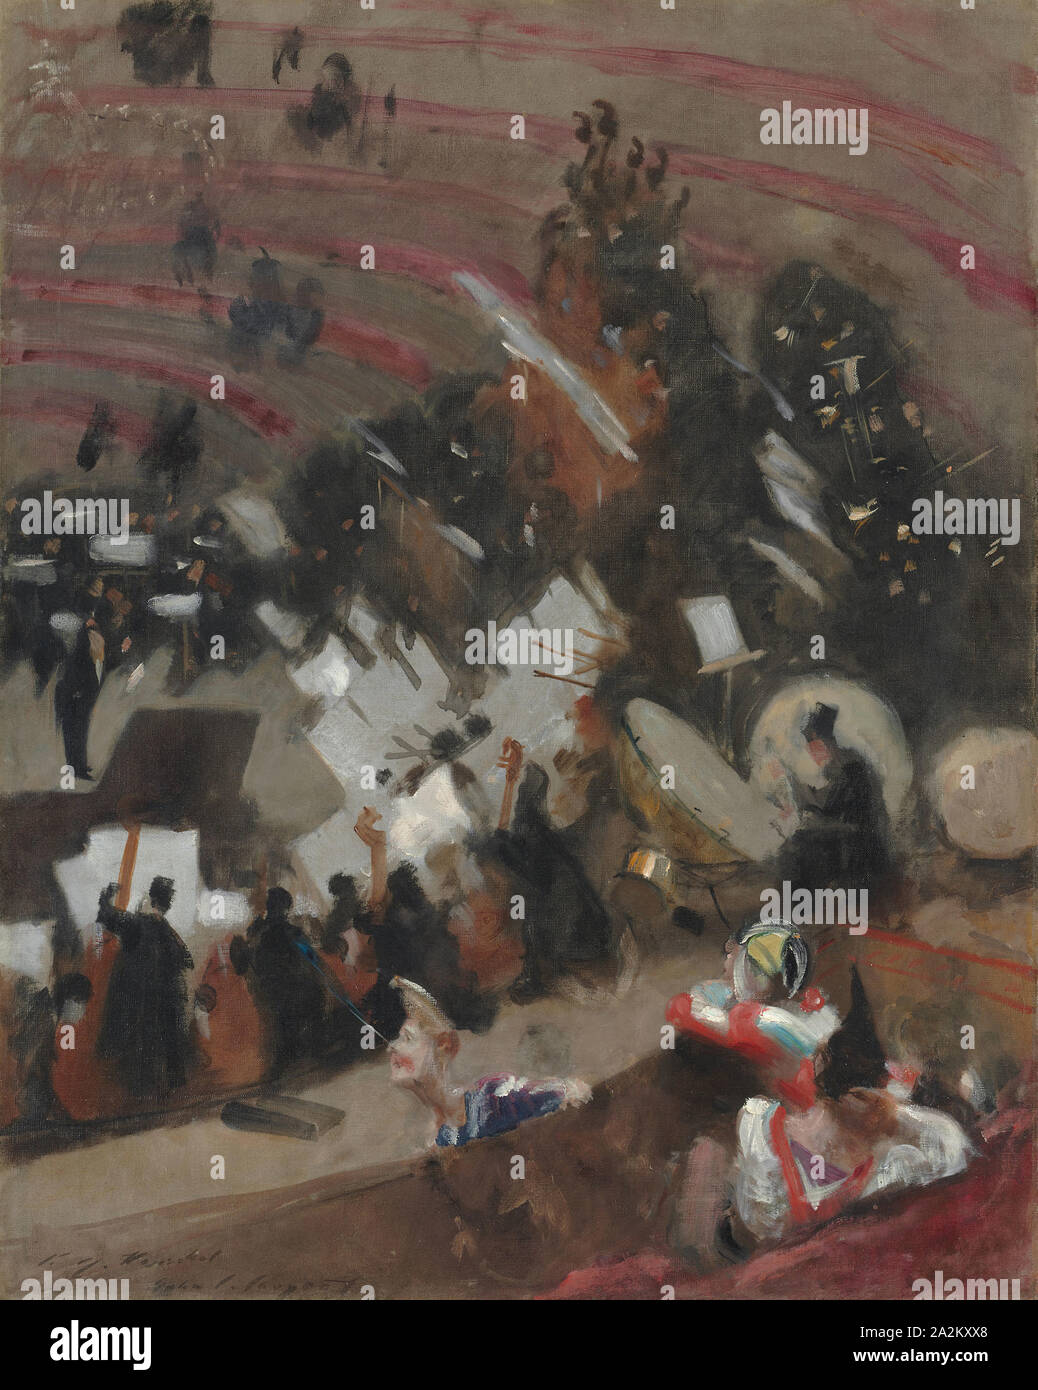 La prova dell'Orchestra Pasdeloup al Cirque d'Hiver, c. 1879, John Singer Sargent, americano, 1856-1925, Parigi, olio su tela, 93 × 73 cm (36 5/8 × 28 3/4 in Foto Stock